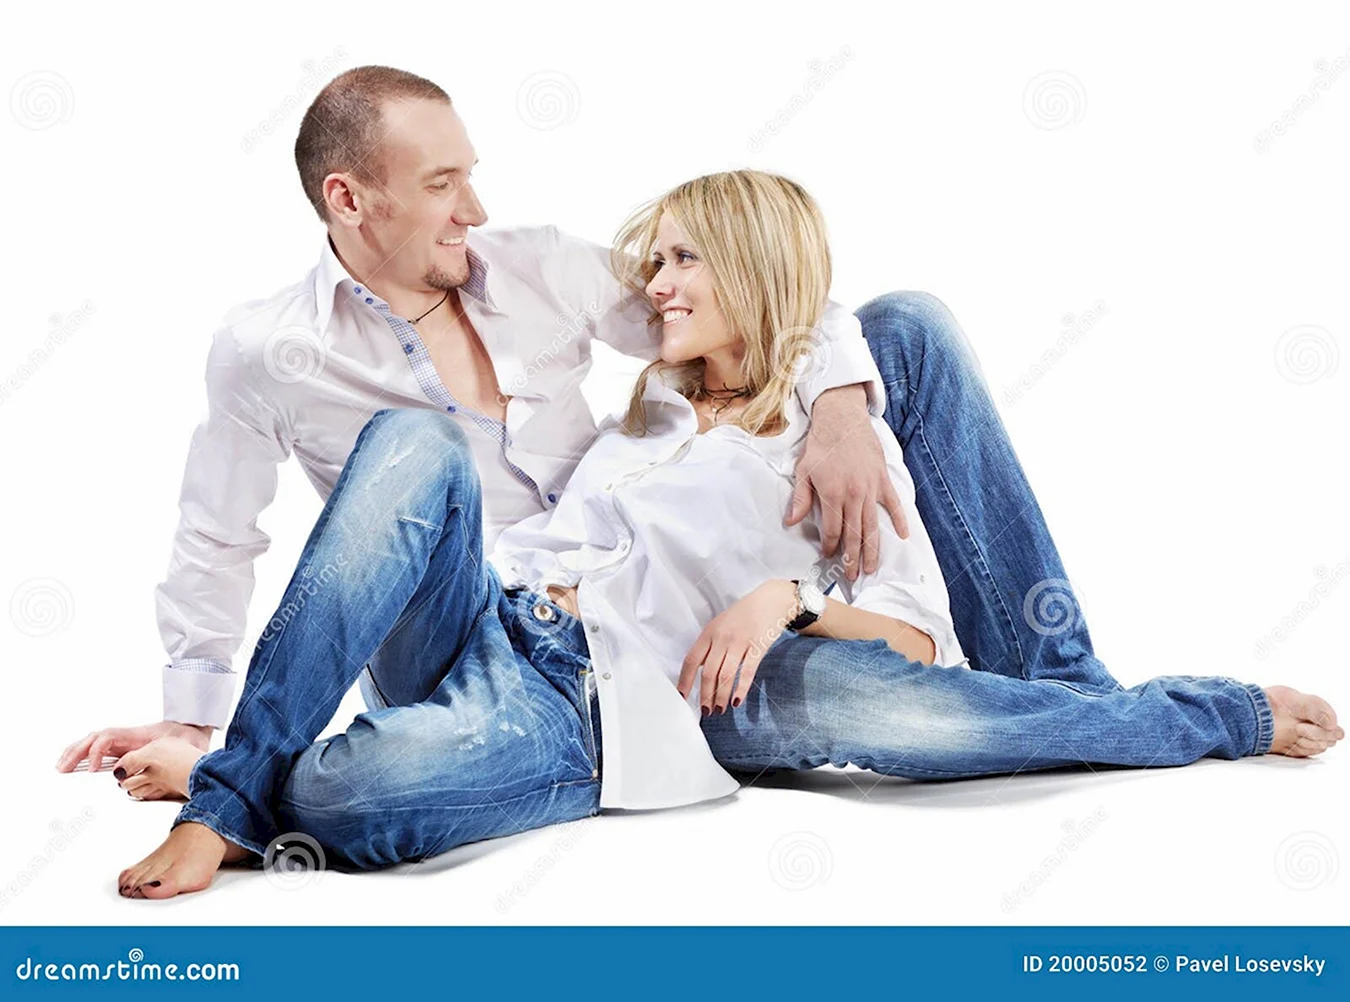 Фотосессия пары в рубашках и джинсах